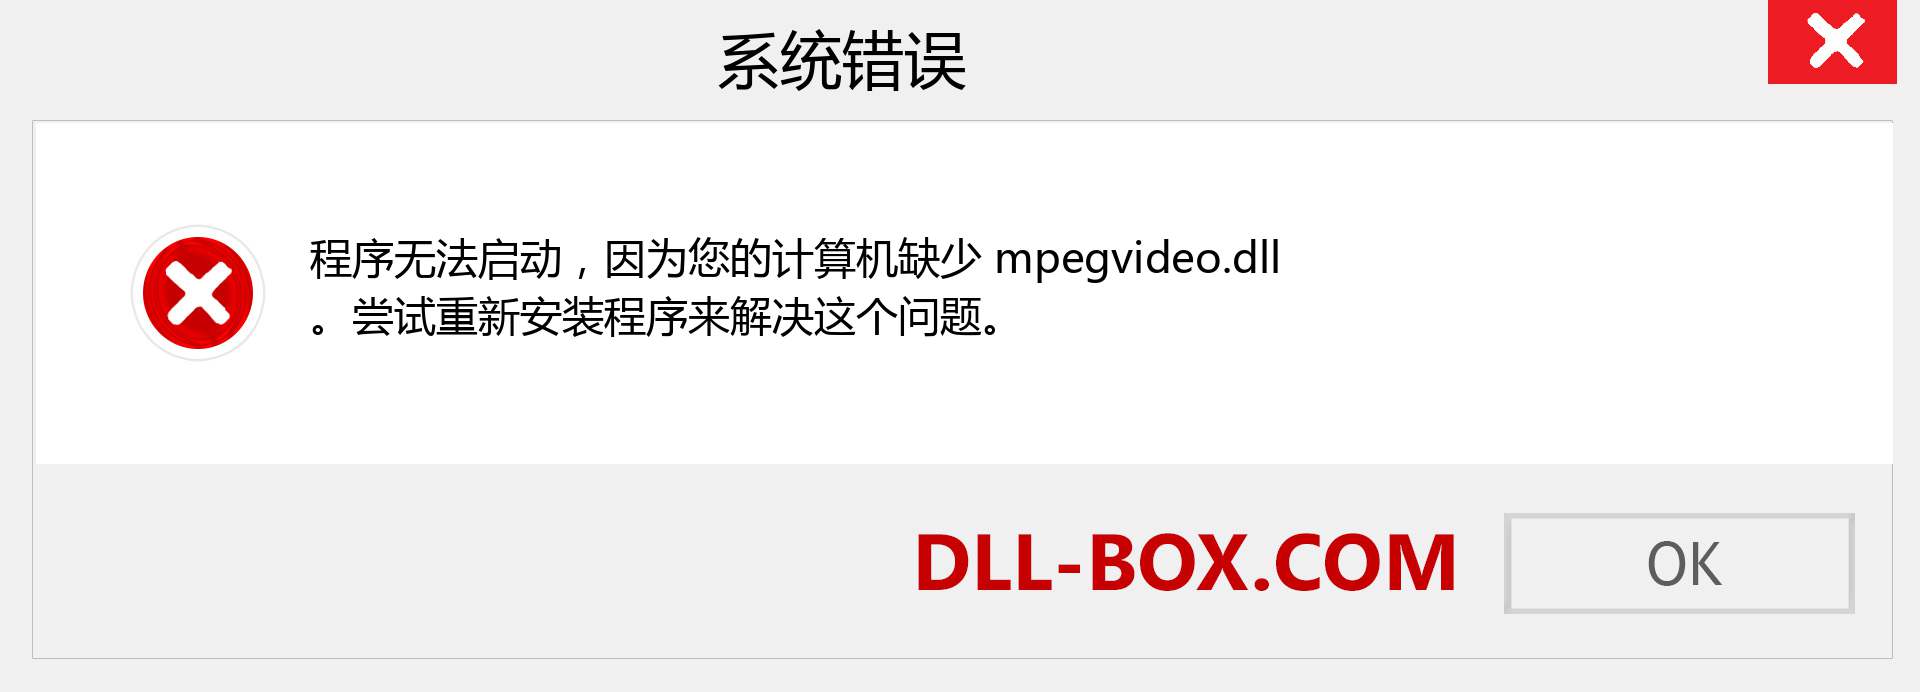 mpegvideo.dll 文件丢失？。 适用于 Windows 7、8、10 的下载 - 修复 Windows、照片、图像上的 mpegvideo dll 丢失错误